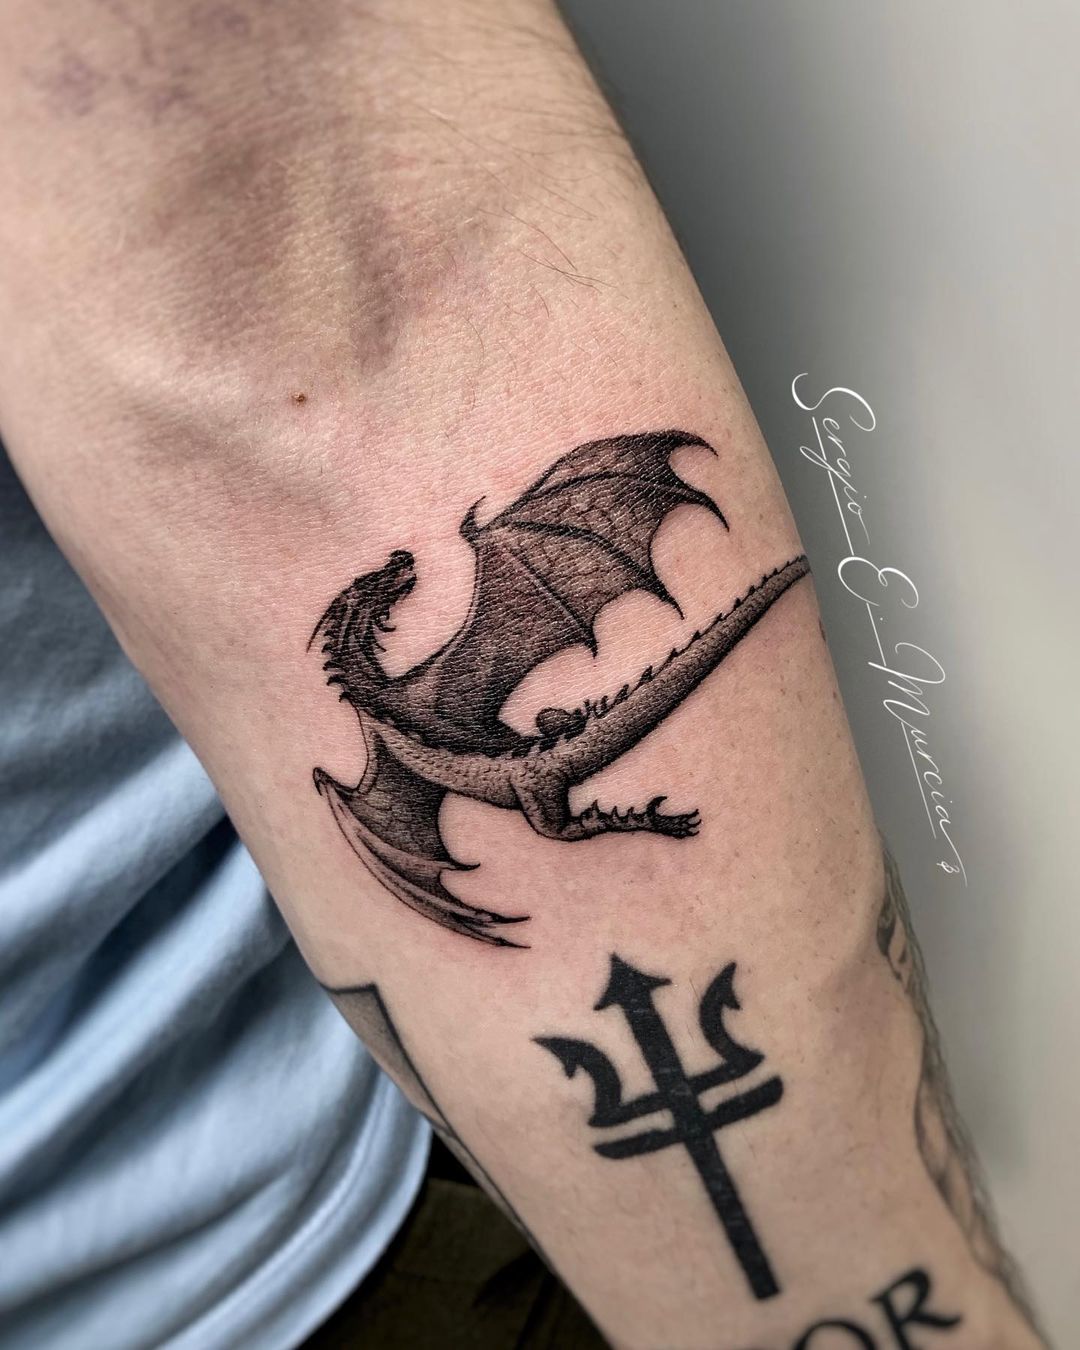 18 Delightful Dragon Tattoos On Wrist  Tattoo Designs  TattoosBagcom